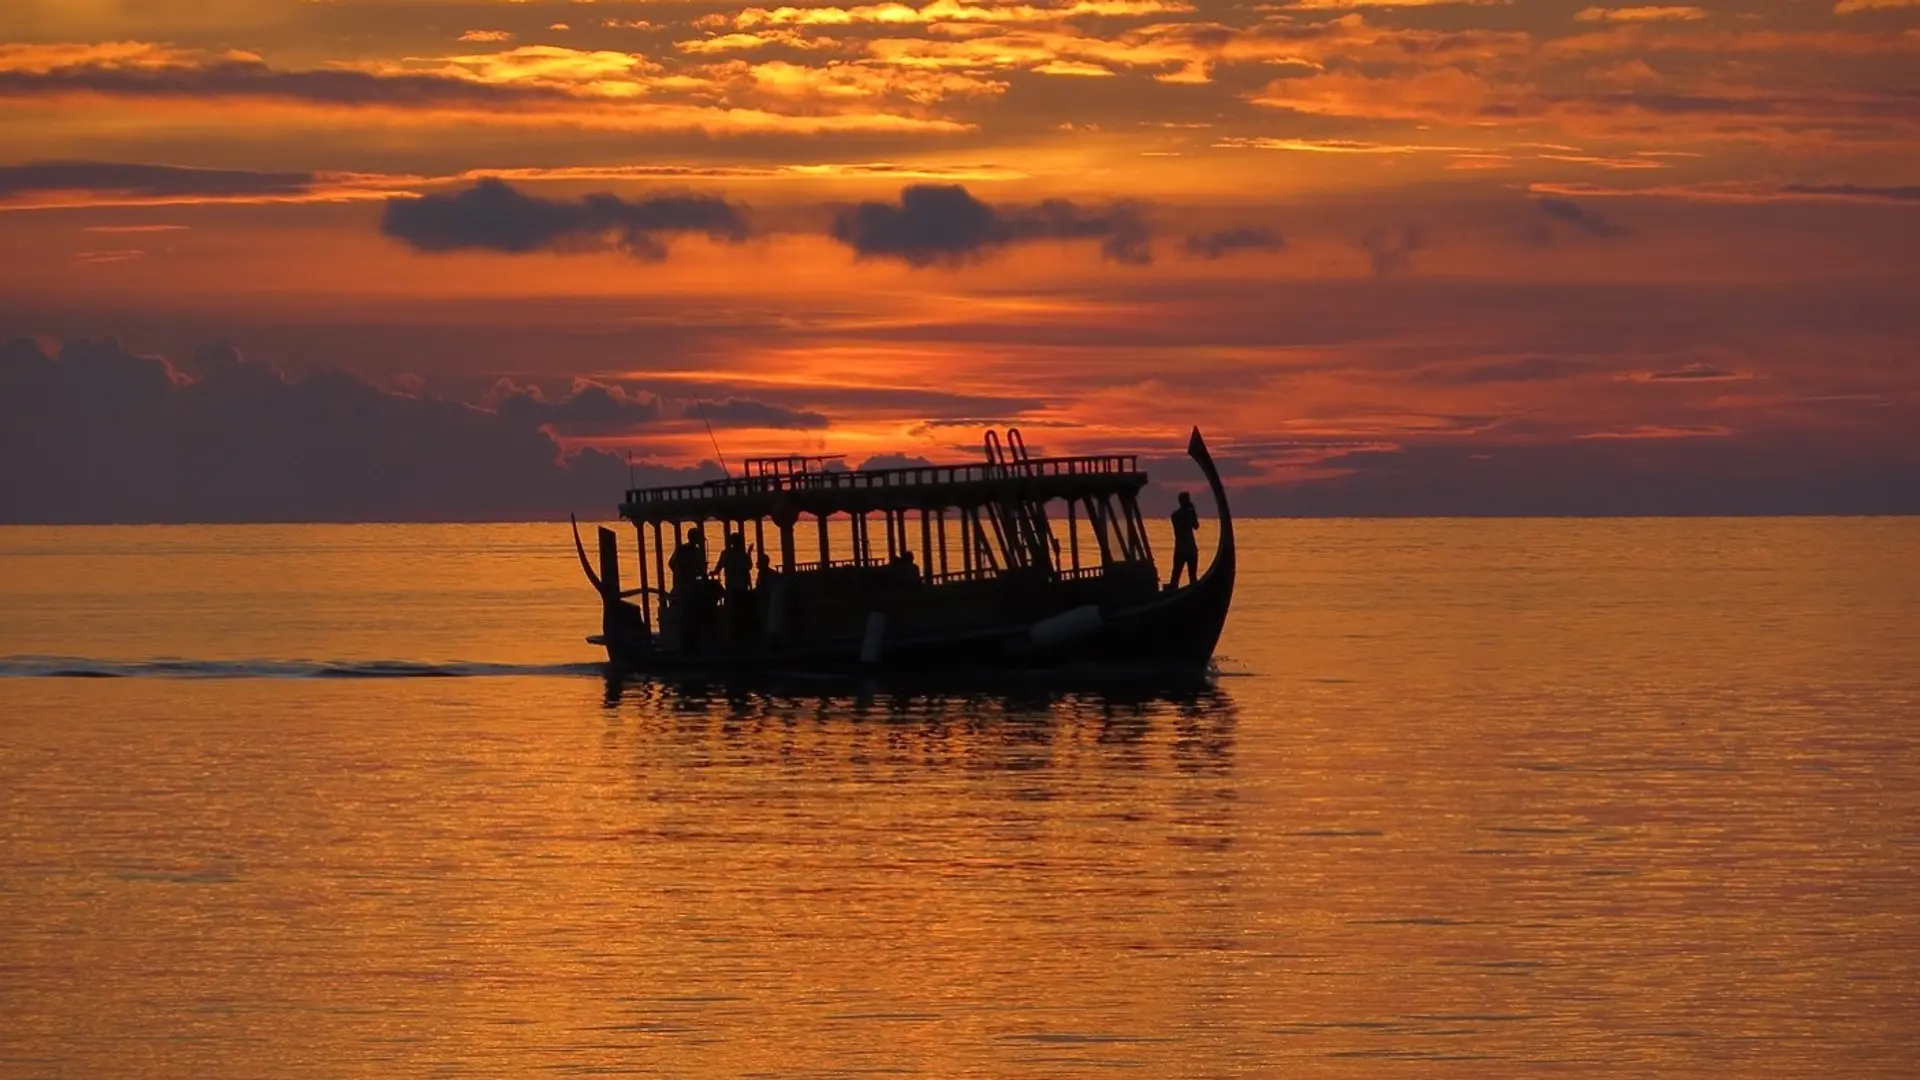 Destinations Articles - Maldives – Indian Ocean Paradise